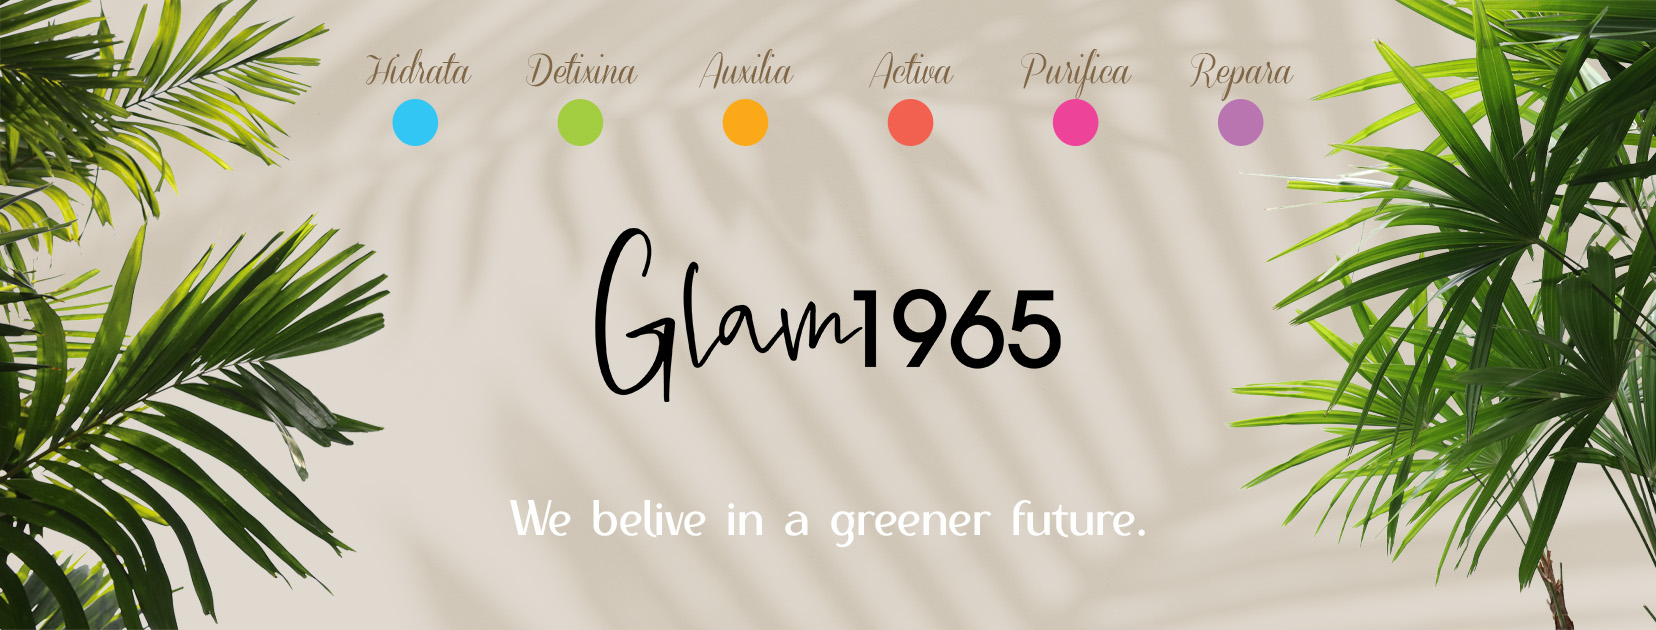 La filosofia Green di Glam1965 a sostegno dell’ambiente e delle persone